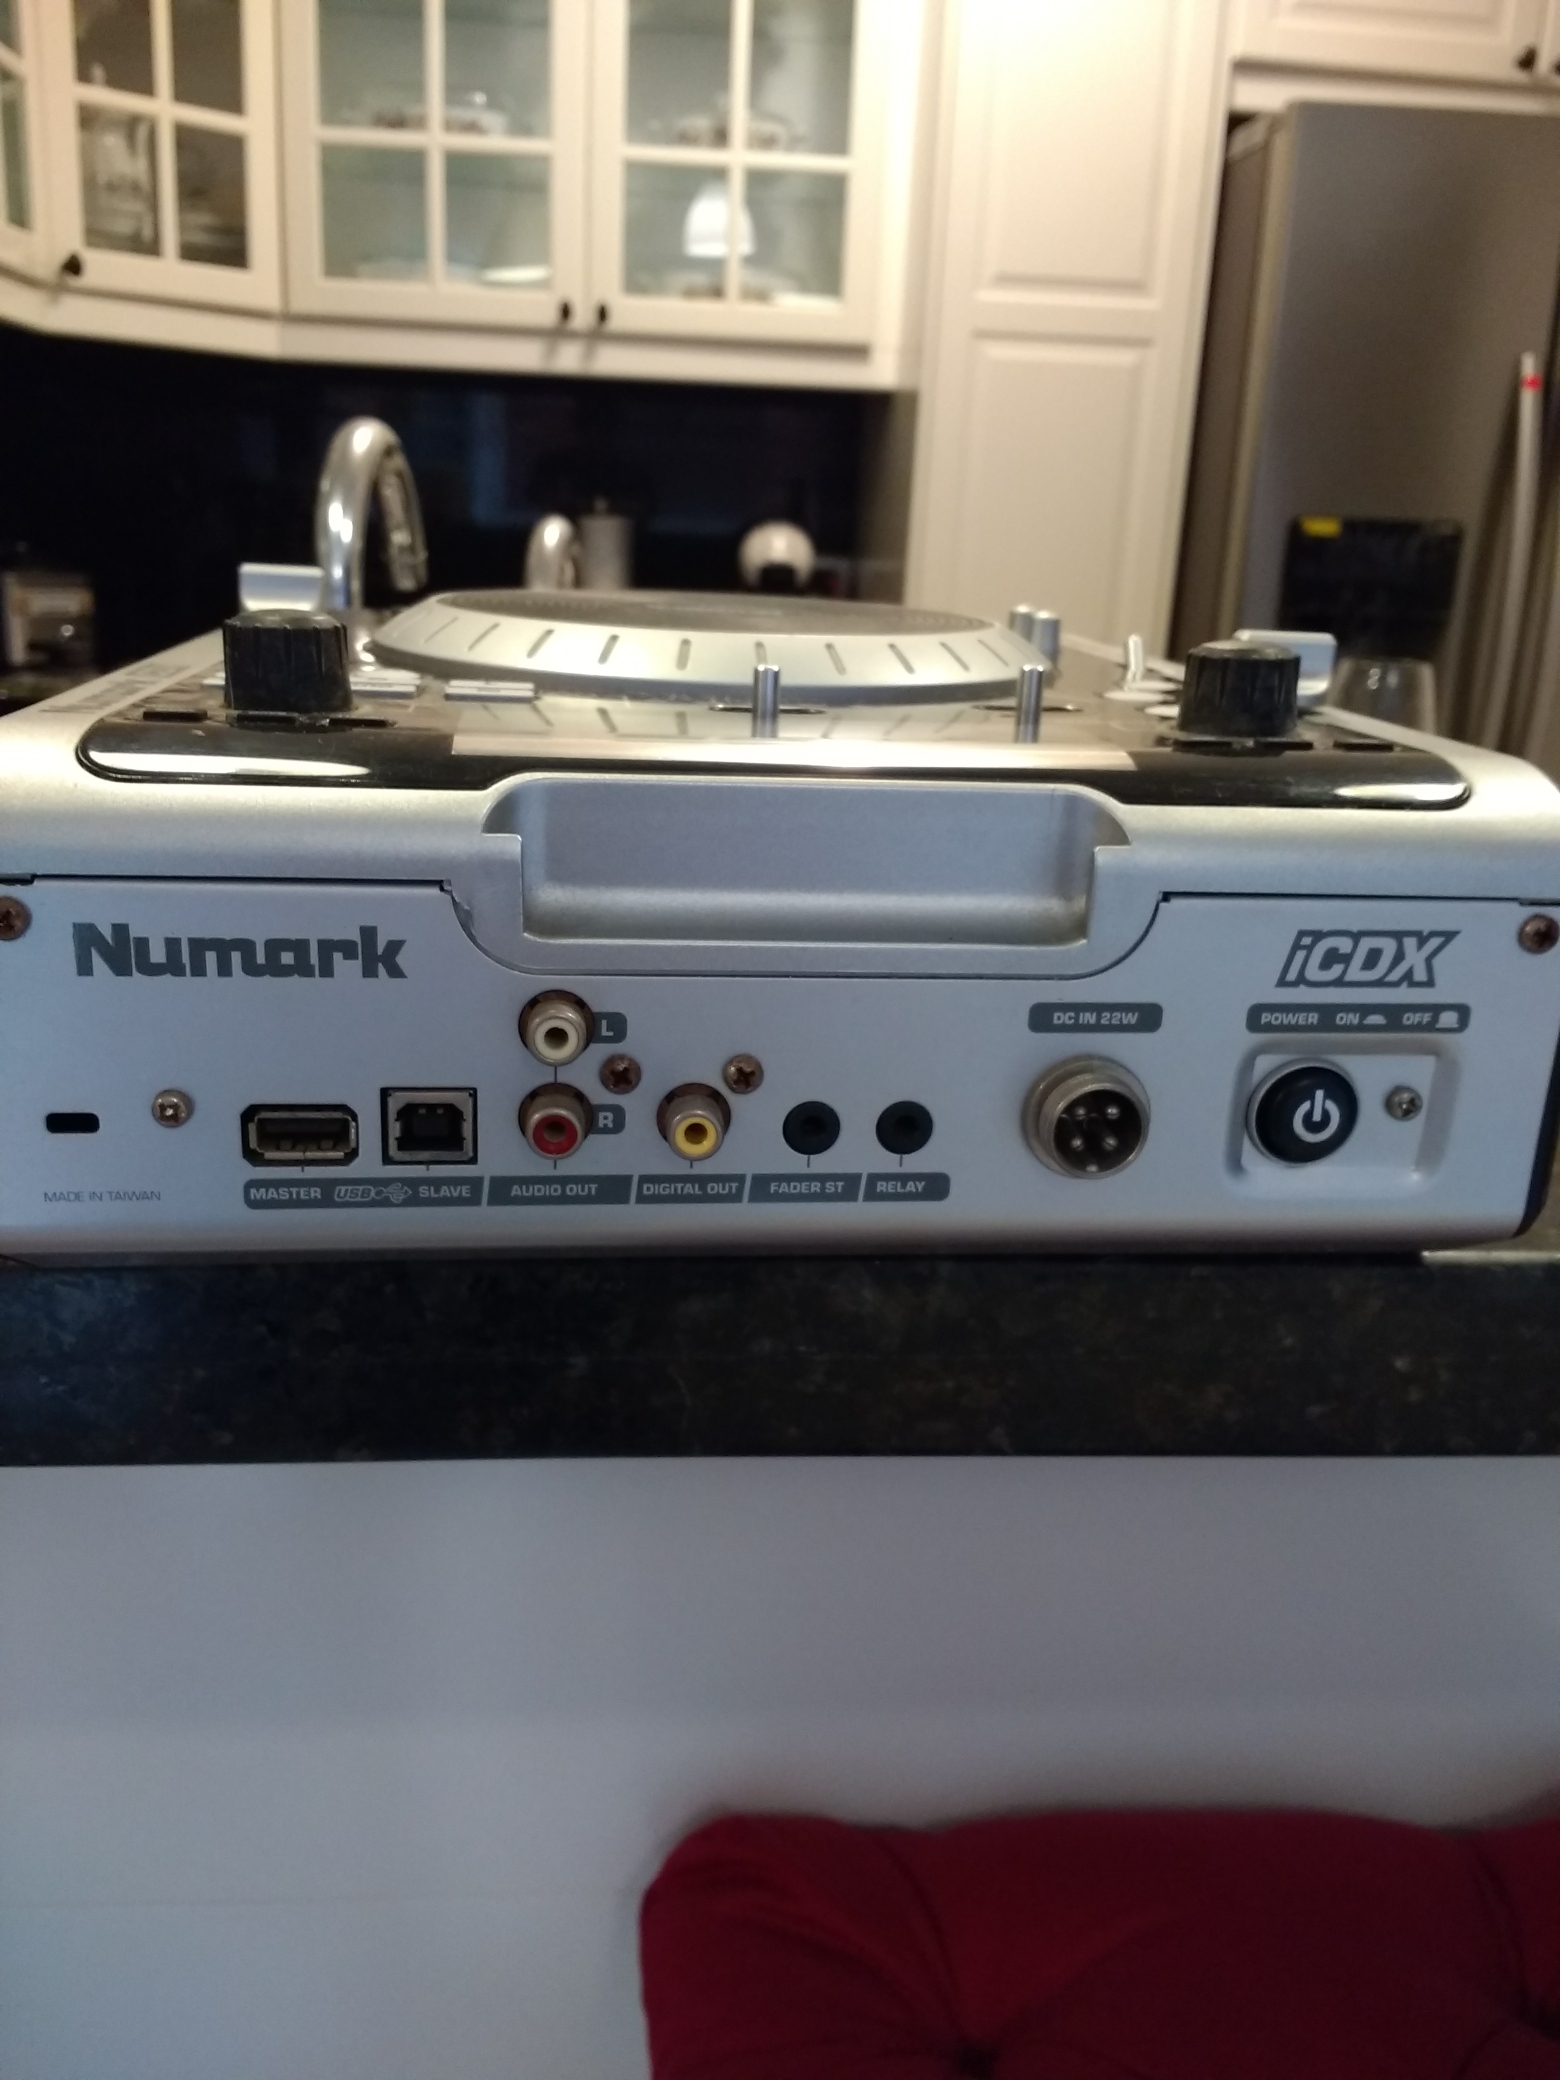 accesorios para electronica - Vendo CD player y mezcladora digital profecional marca Numark entrada USB